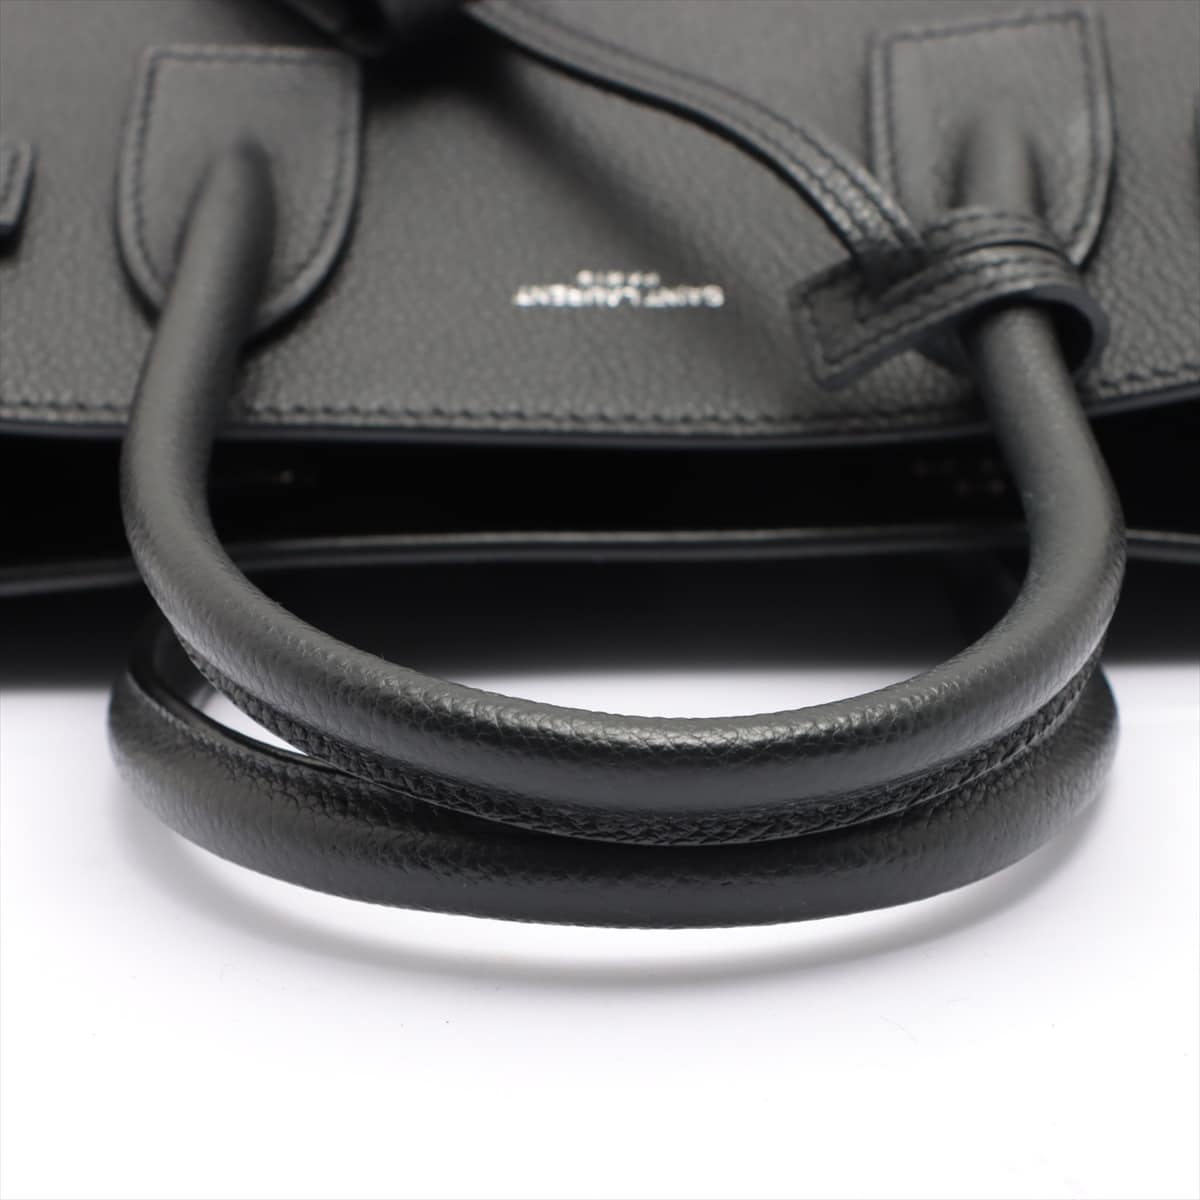 Saint Laurent Paris Sac de Jour Leather 2way handbag Black